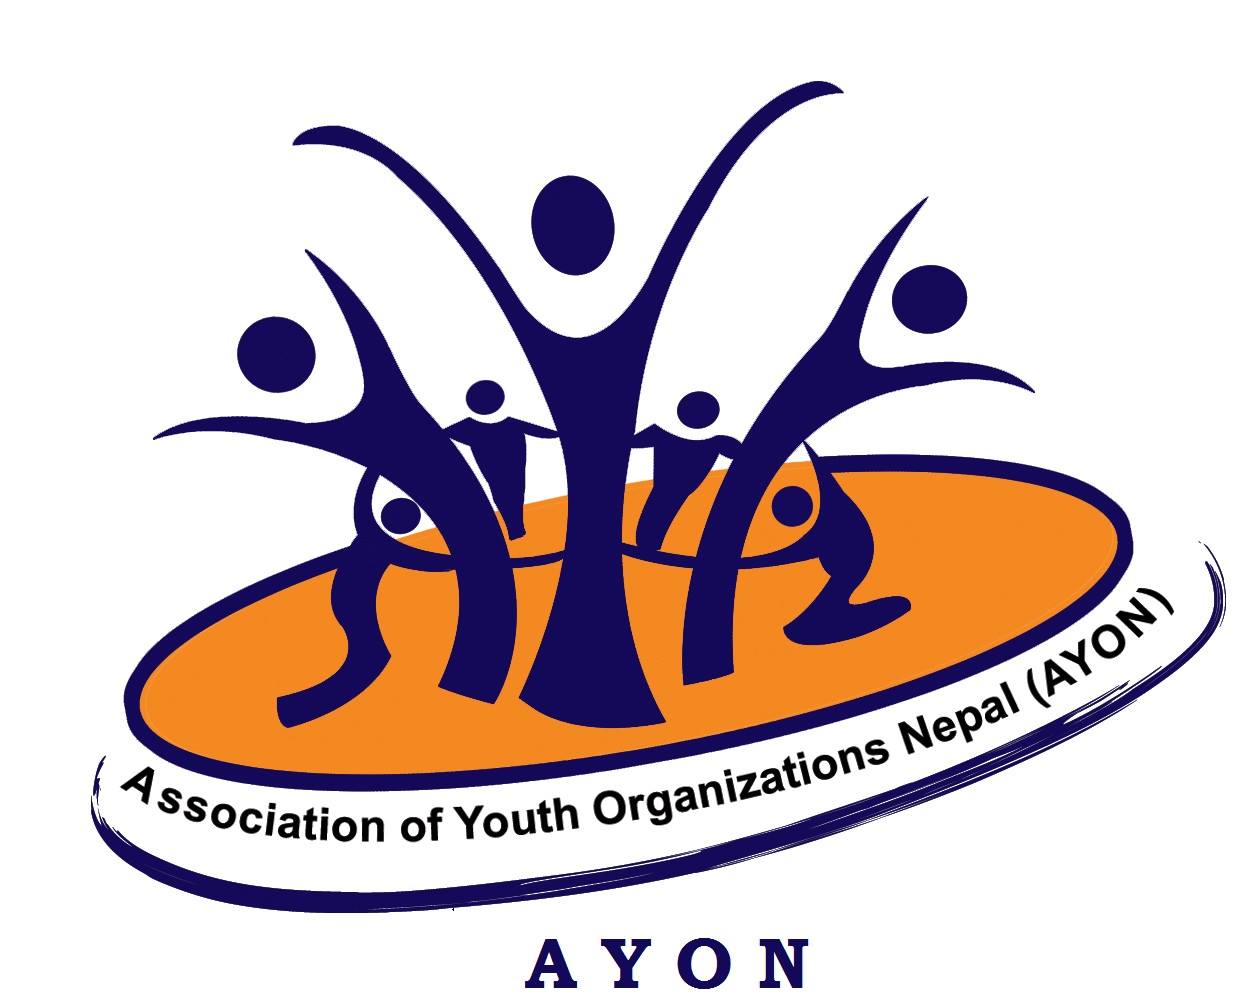 Association of Youth Organizations Nepal (AYON)